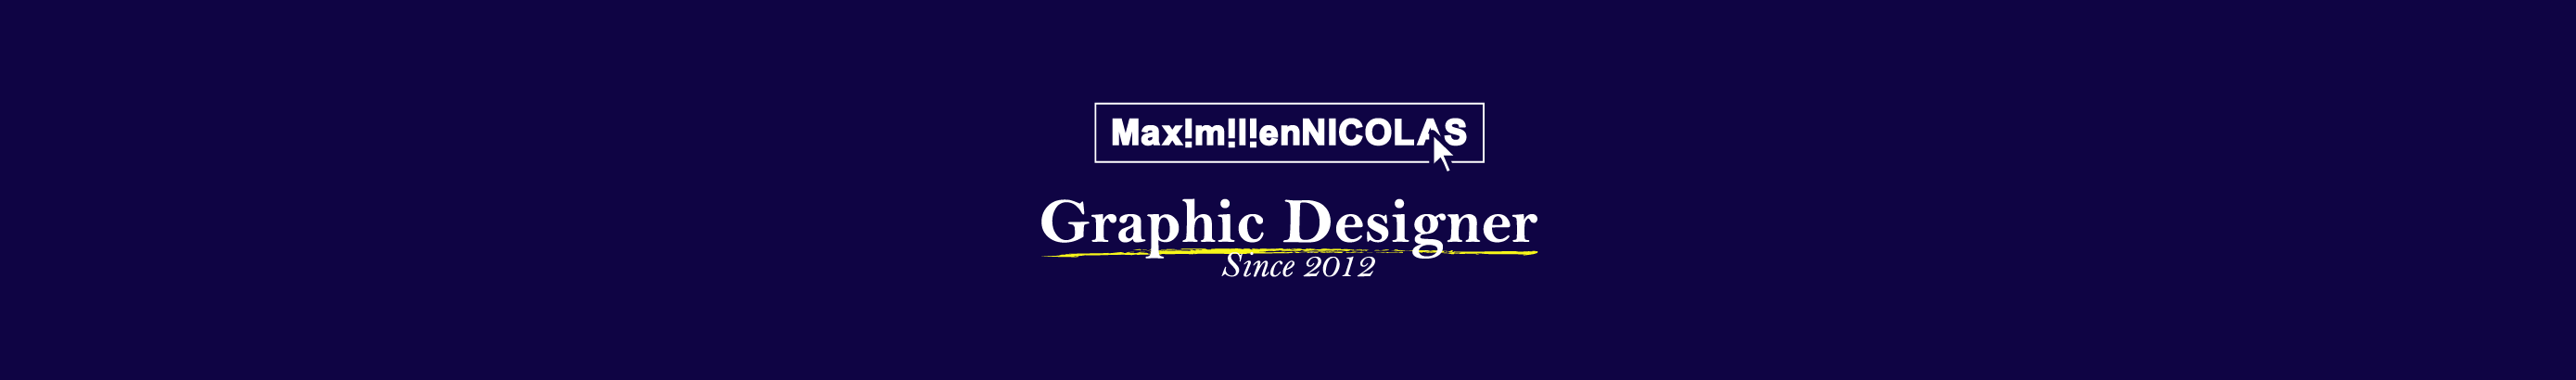 Banner de perfil de Maximilien Nicolas